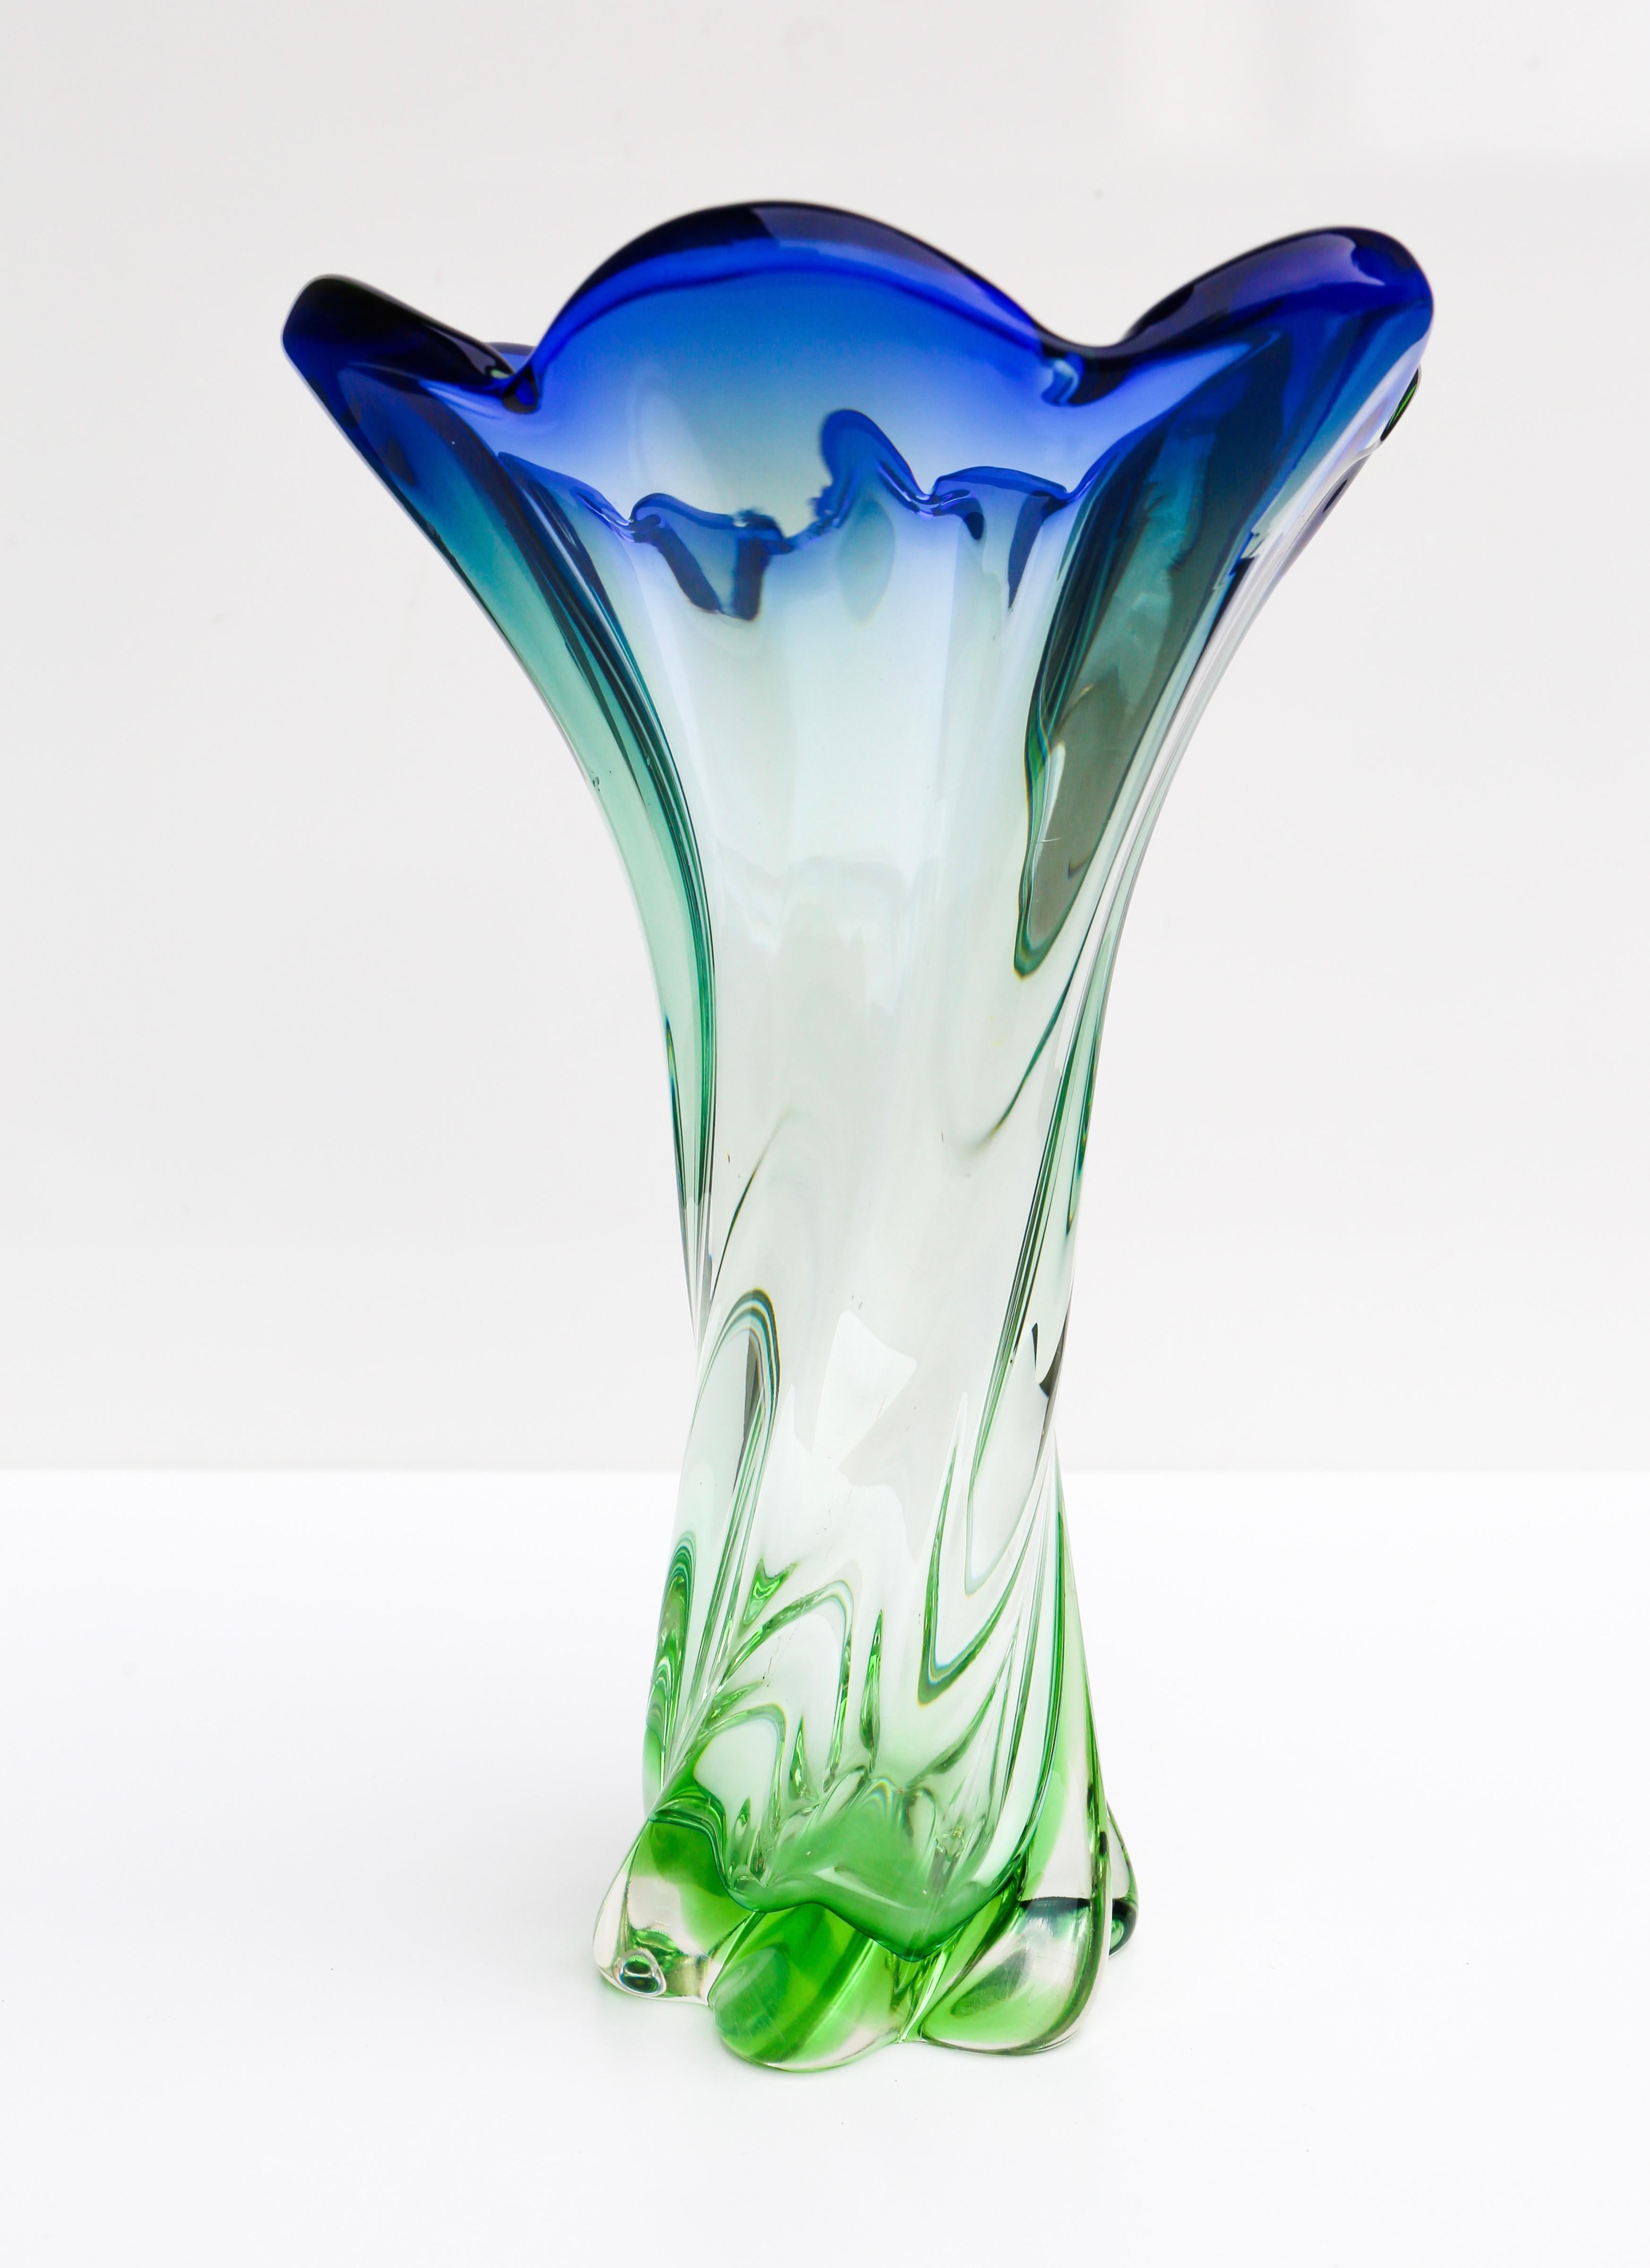 Grand vase en verre de Murano, fabriqué dans les années 1960 à Murano (Italie) et vraisemblablement conçu par Flavio Poli. Hauteur : 11,4